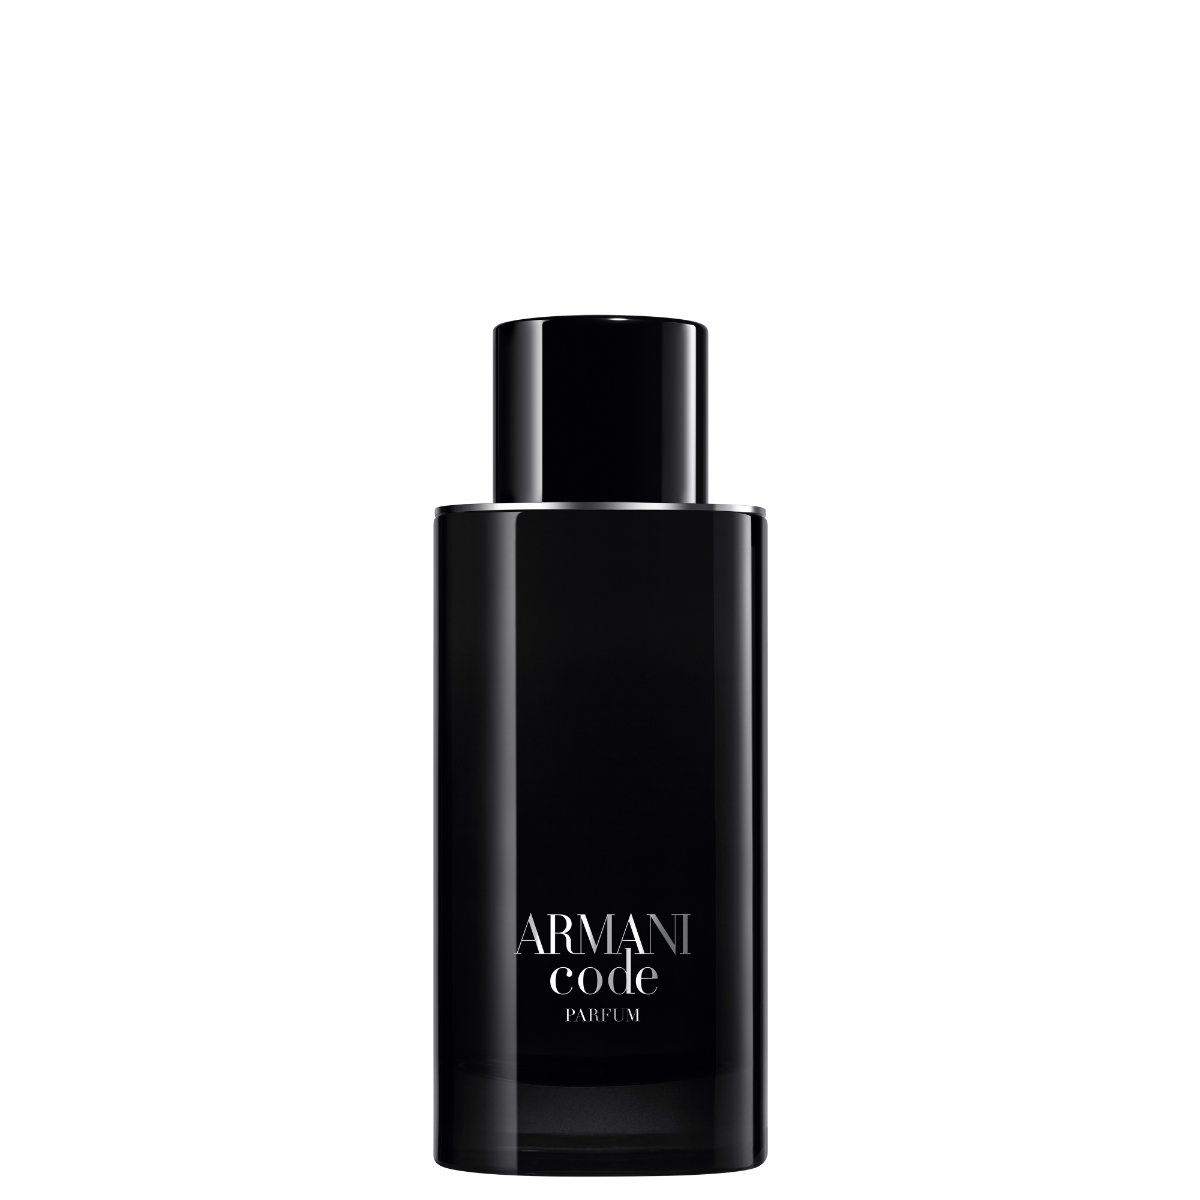 Giorgio Armani Unveiled Its New Armani Code Parfume